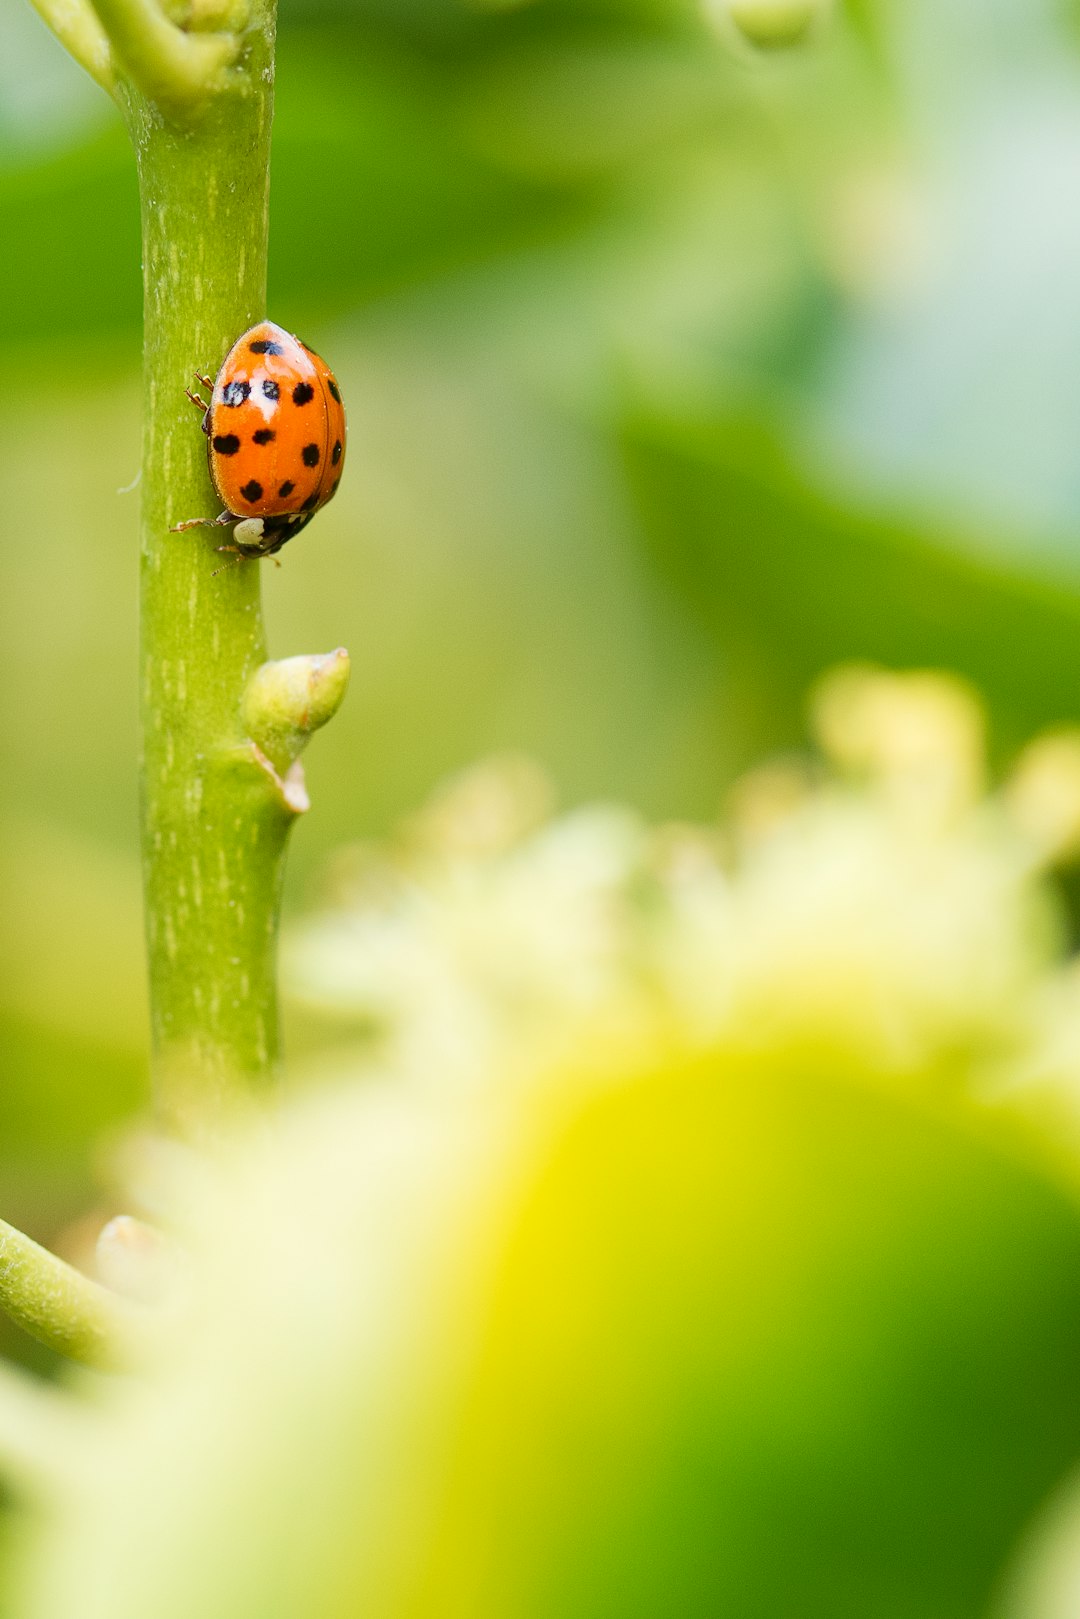 orange ladybug perching on stem in close-up photography